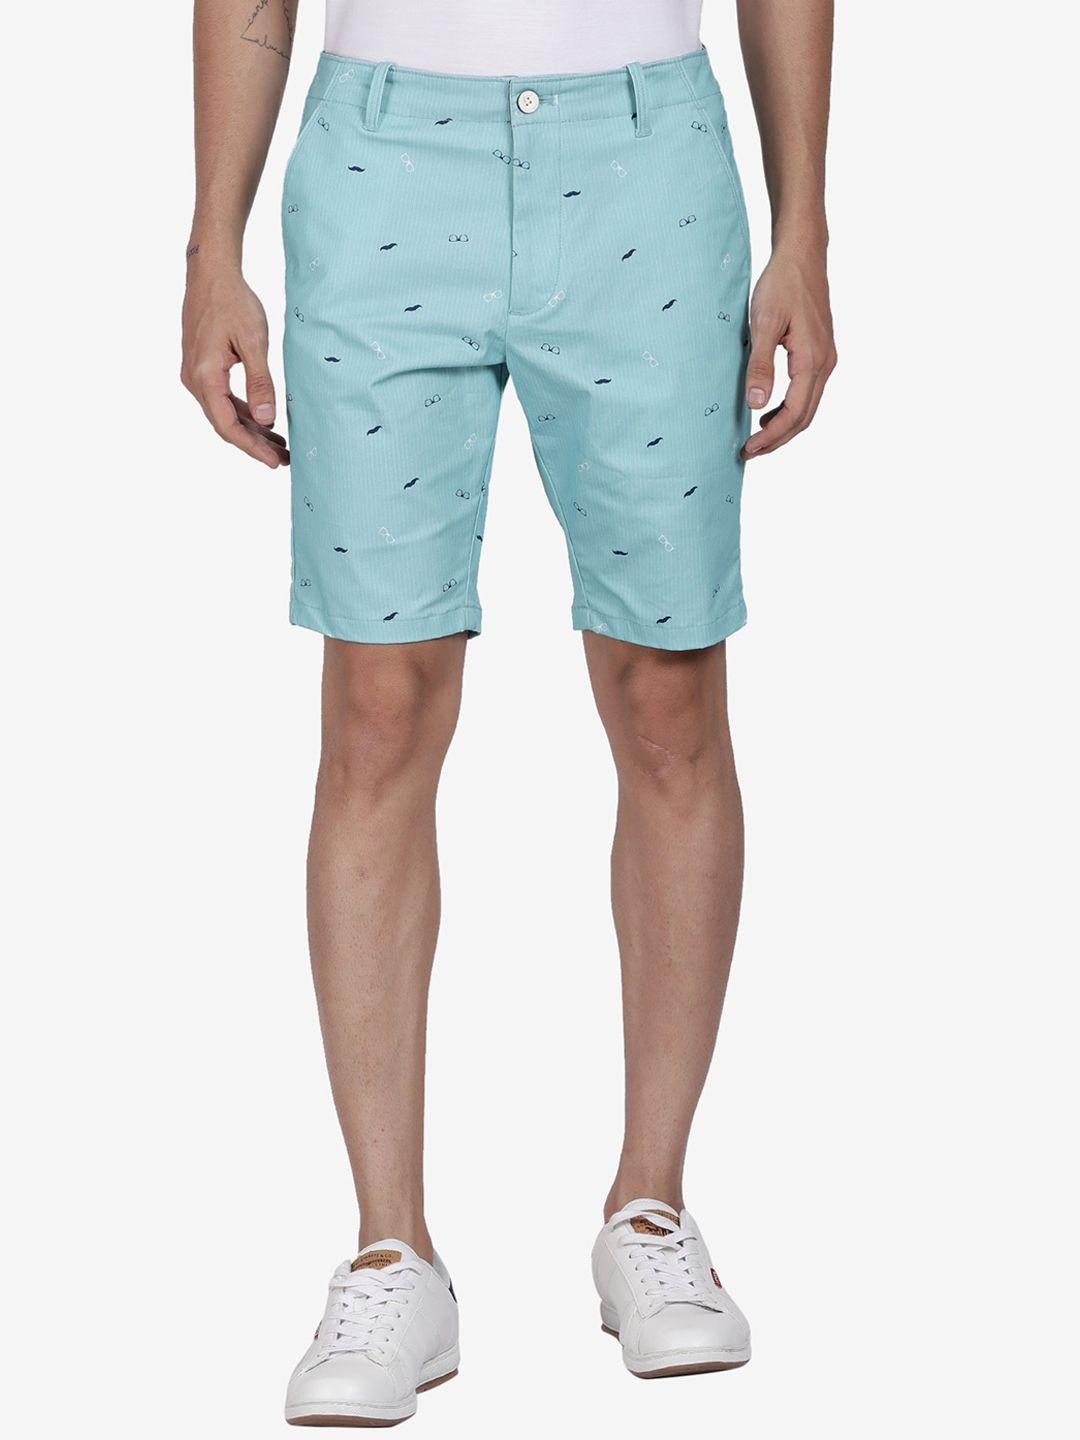 t-base men printed cotton regular fit shorts